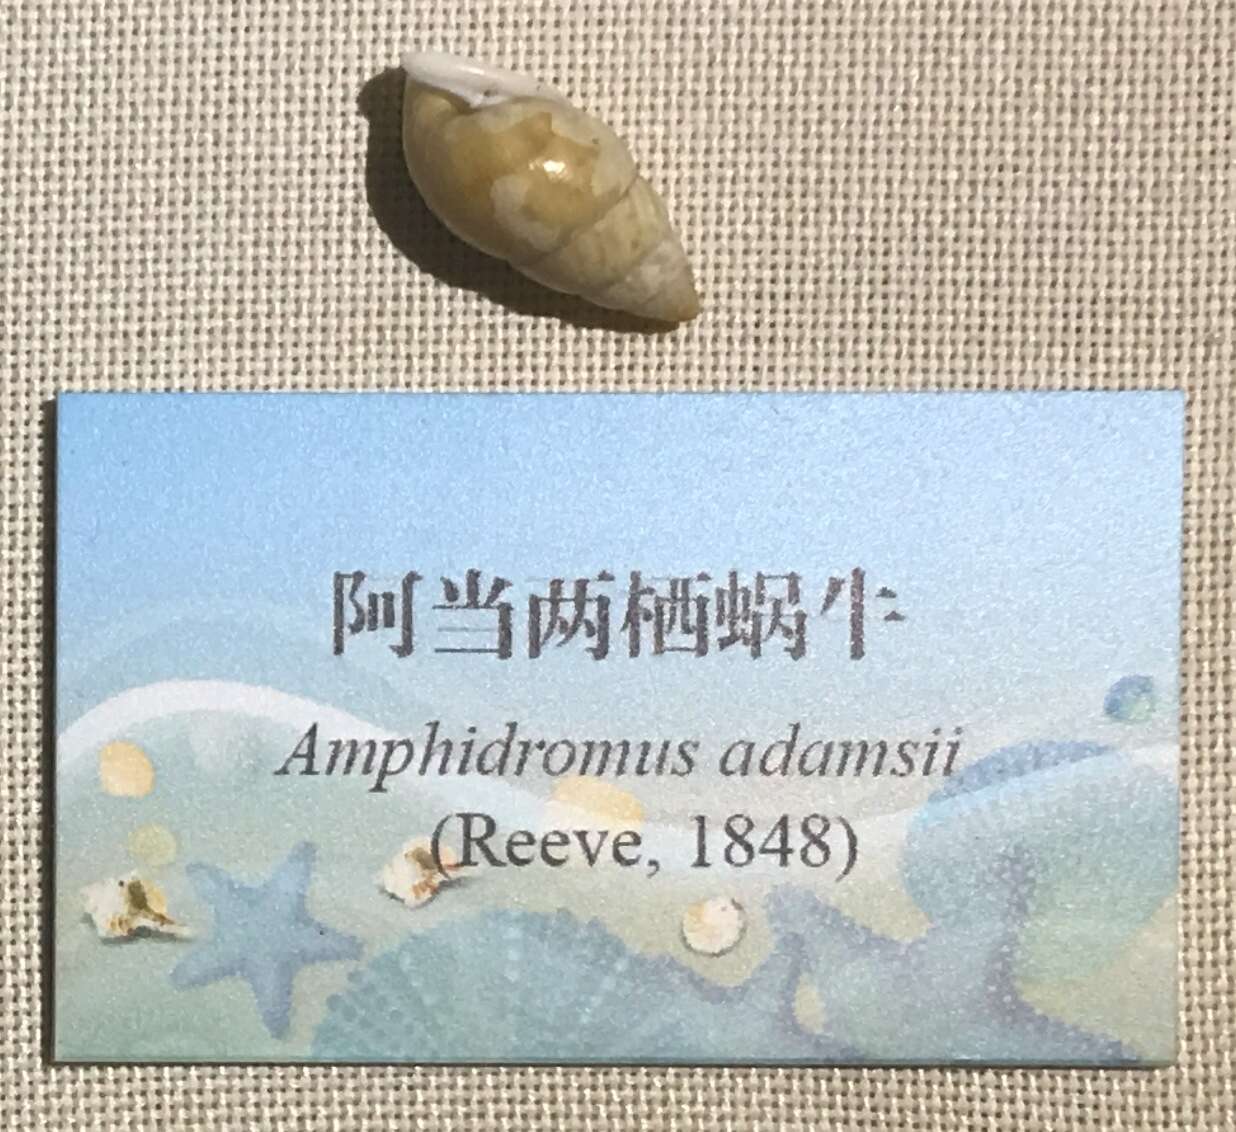 Image of Amphidromus adamsii